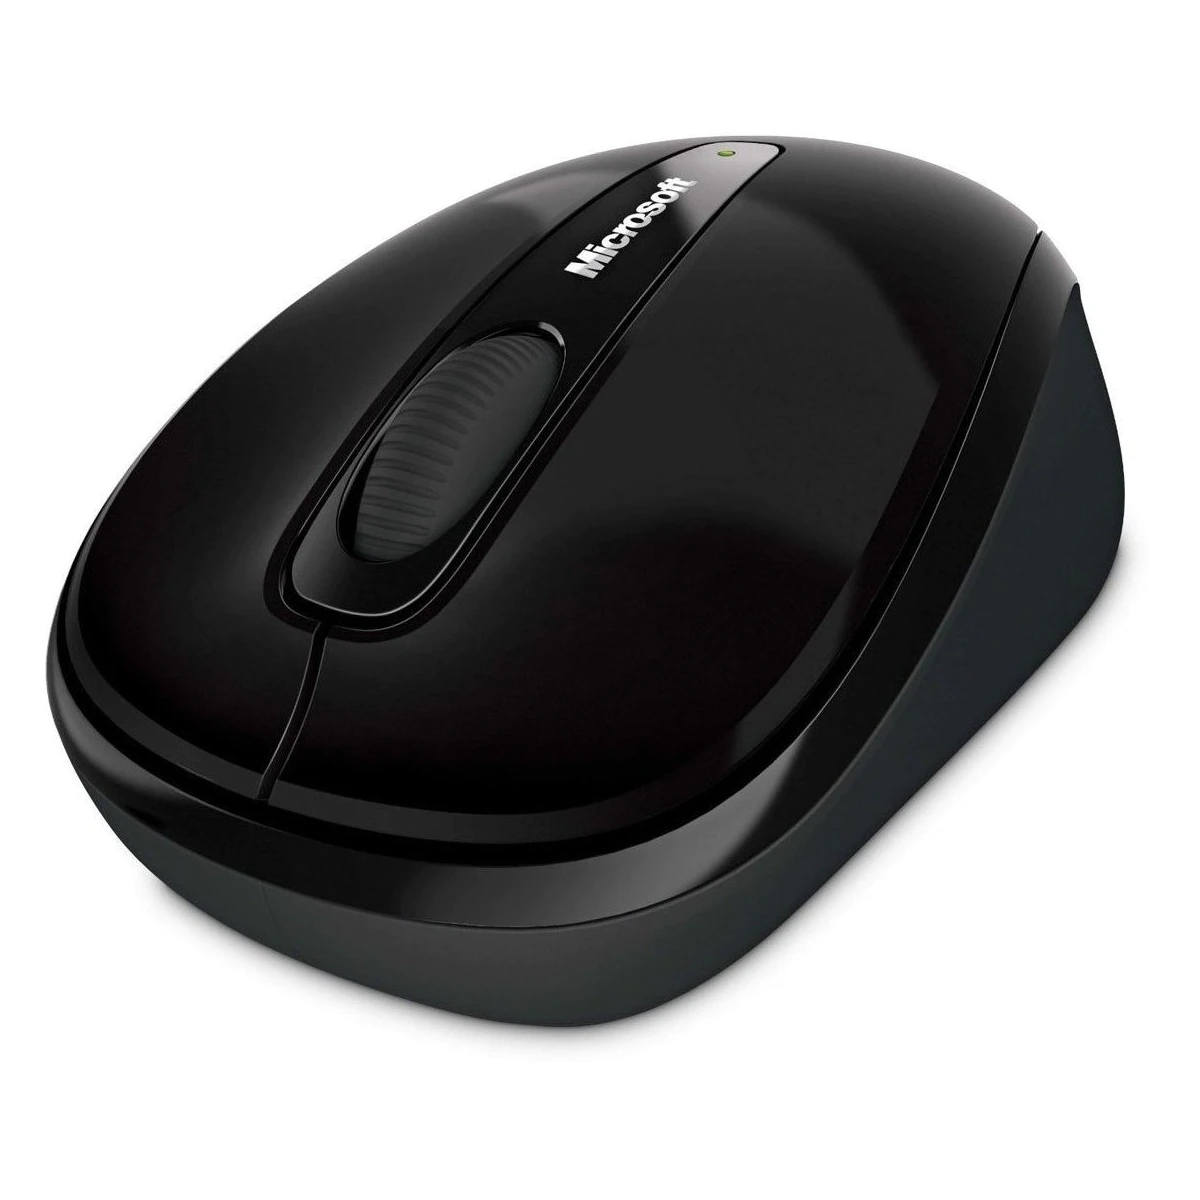 Ratón inalámbrico Microsoft Mobile Mouse 3500 Edición Limitada